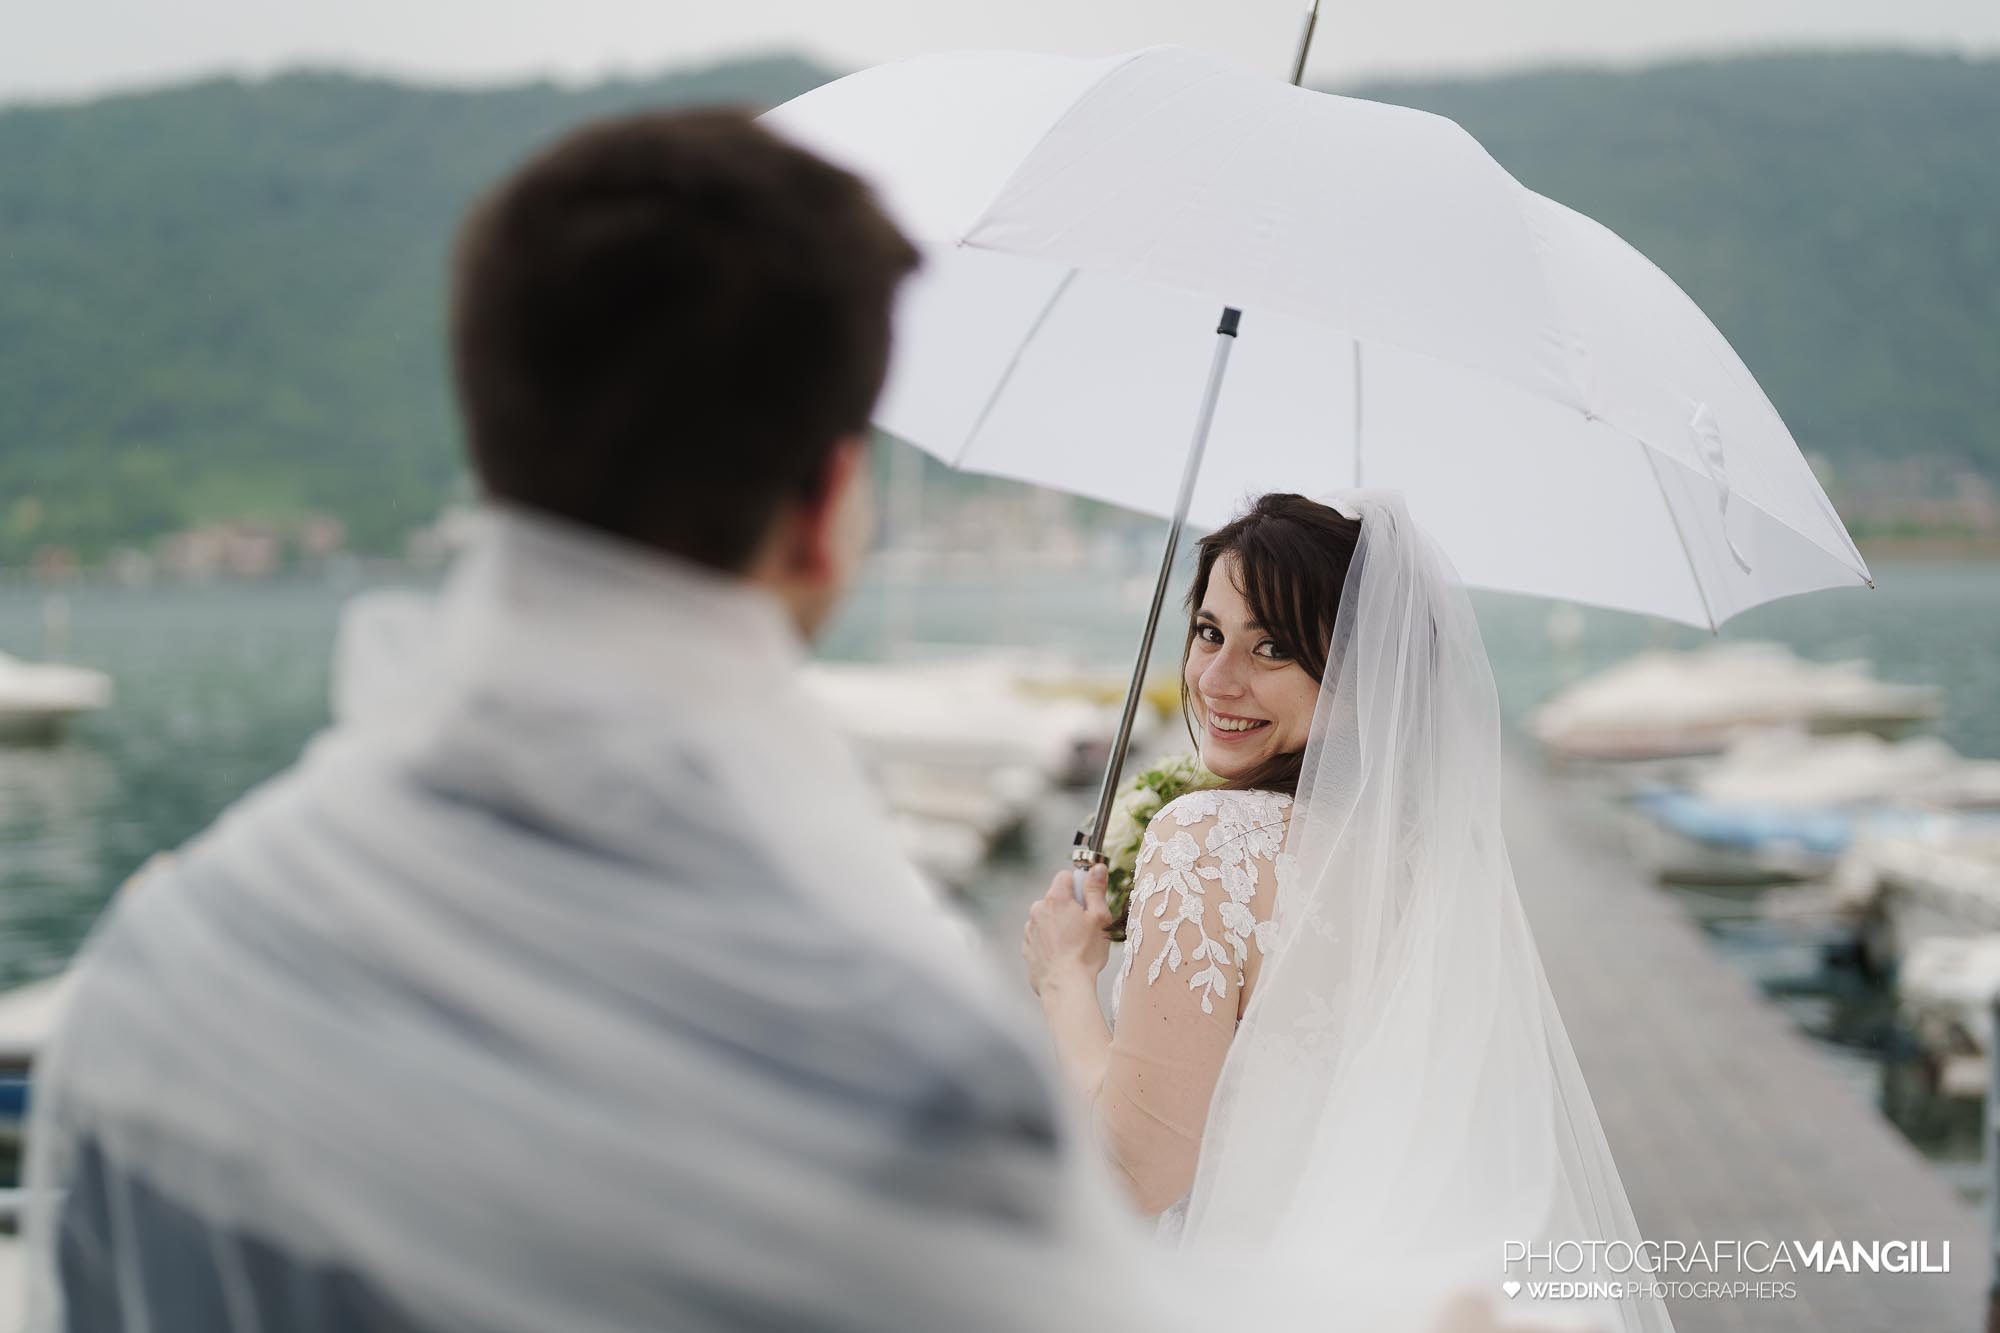 046 servizio fotografico wedding reportage ritratto sposi ombrello pioggia lungolago Sarnico lago Iseo Bergamo chiara oliviero